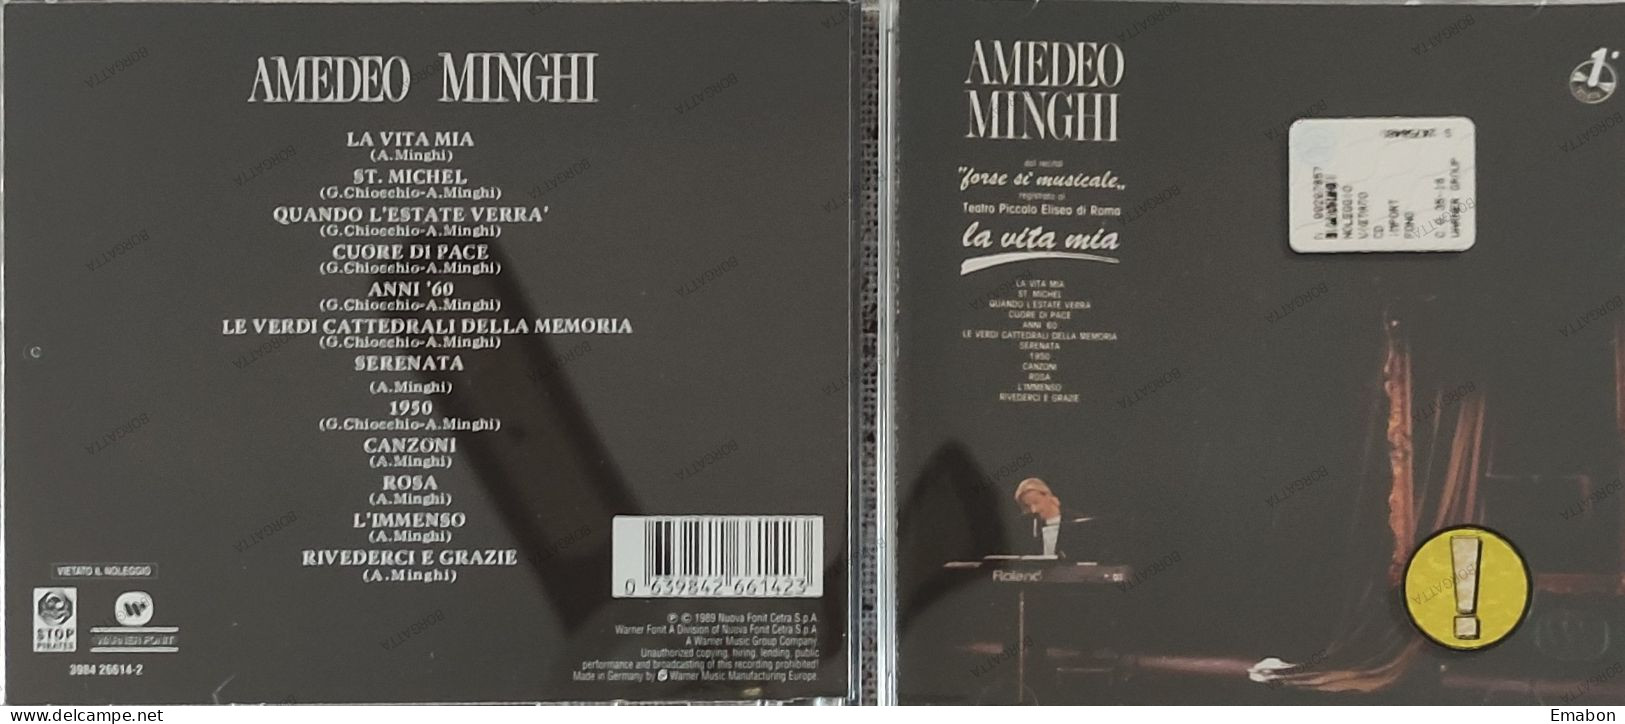 BORGATTA - ITALIANA  - Cd AMEDEO MINGHI - LA VITA MIA - NUOVA FONIT CETRA 1989 -  USATO In Buono Stato - Otros - Canción Italiana